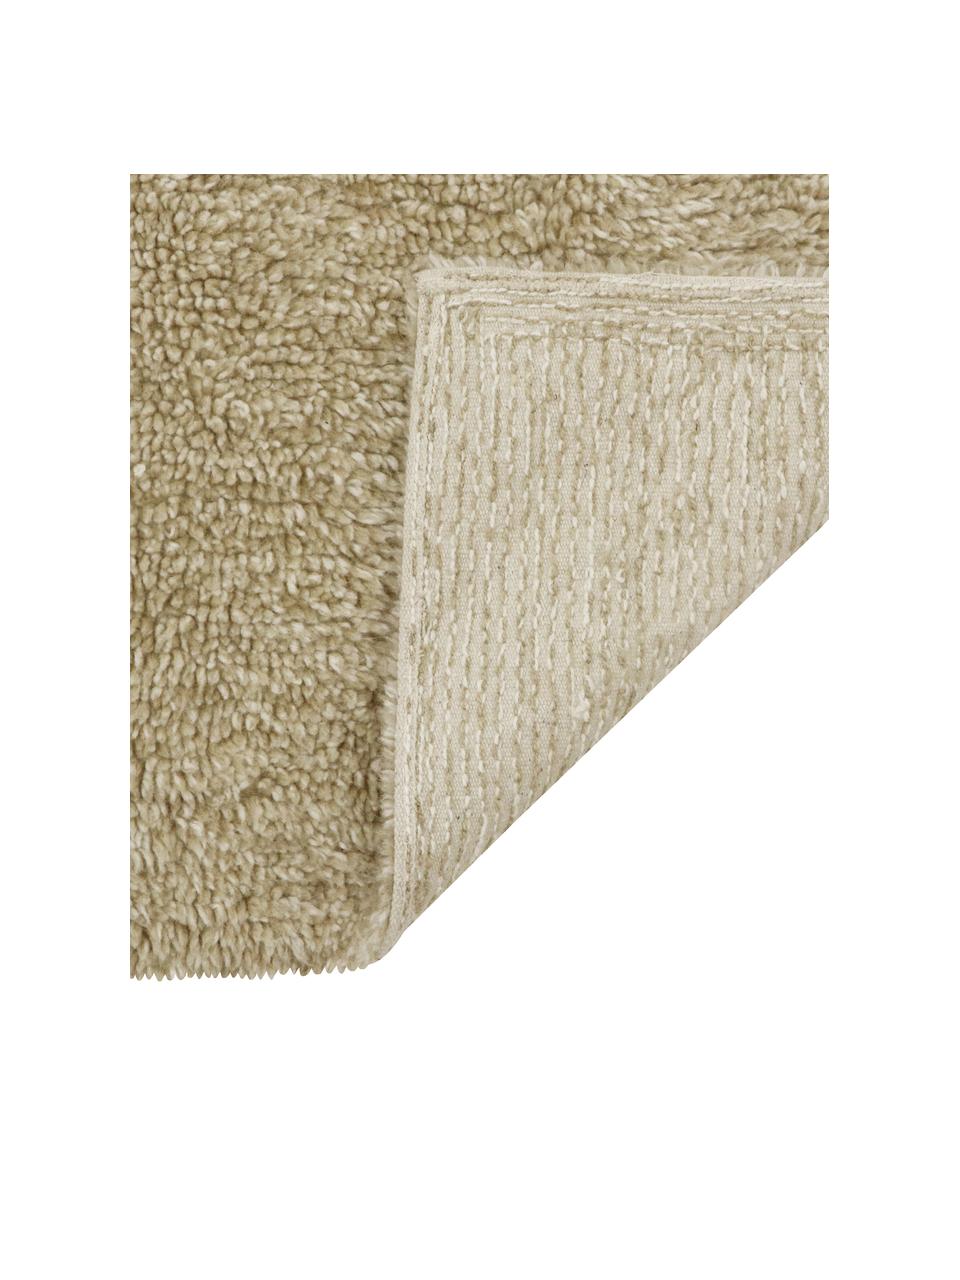 Tapis en laine beige fait main Tundra, lavable, Beige, larg. 170 x long. 240 cm (taille M)